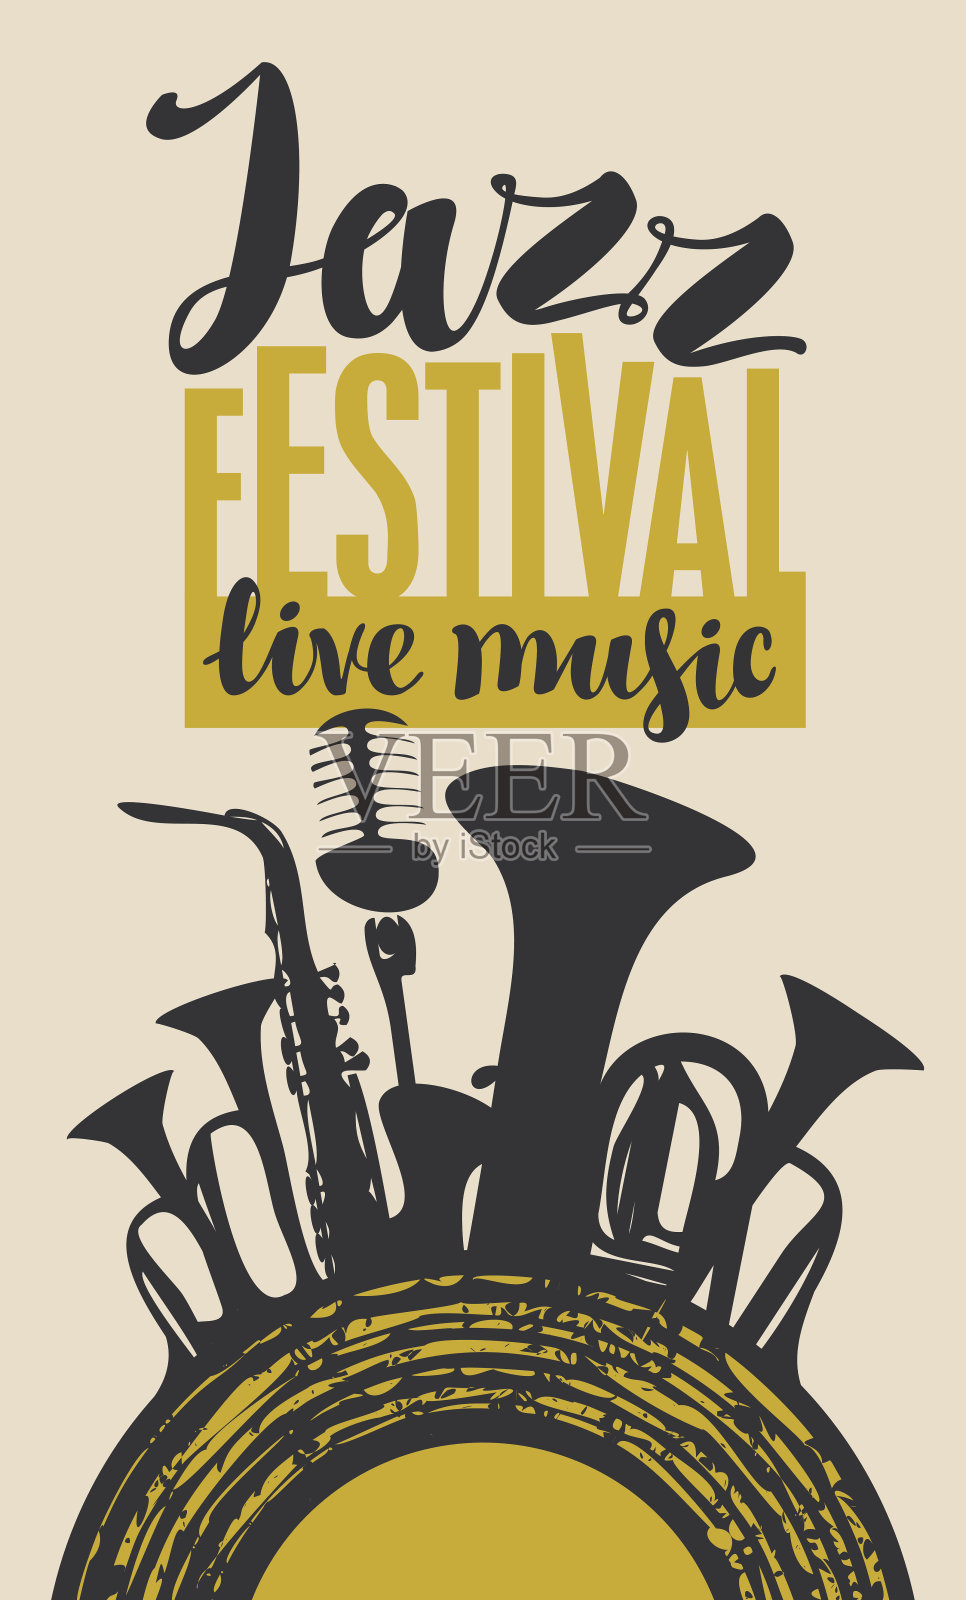 爵士音乐节的管乐器海报设计模板素材